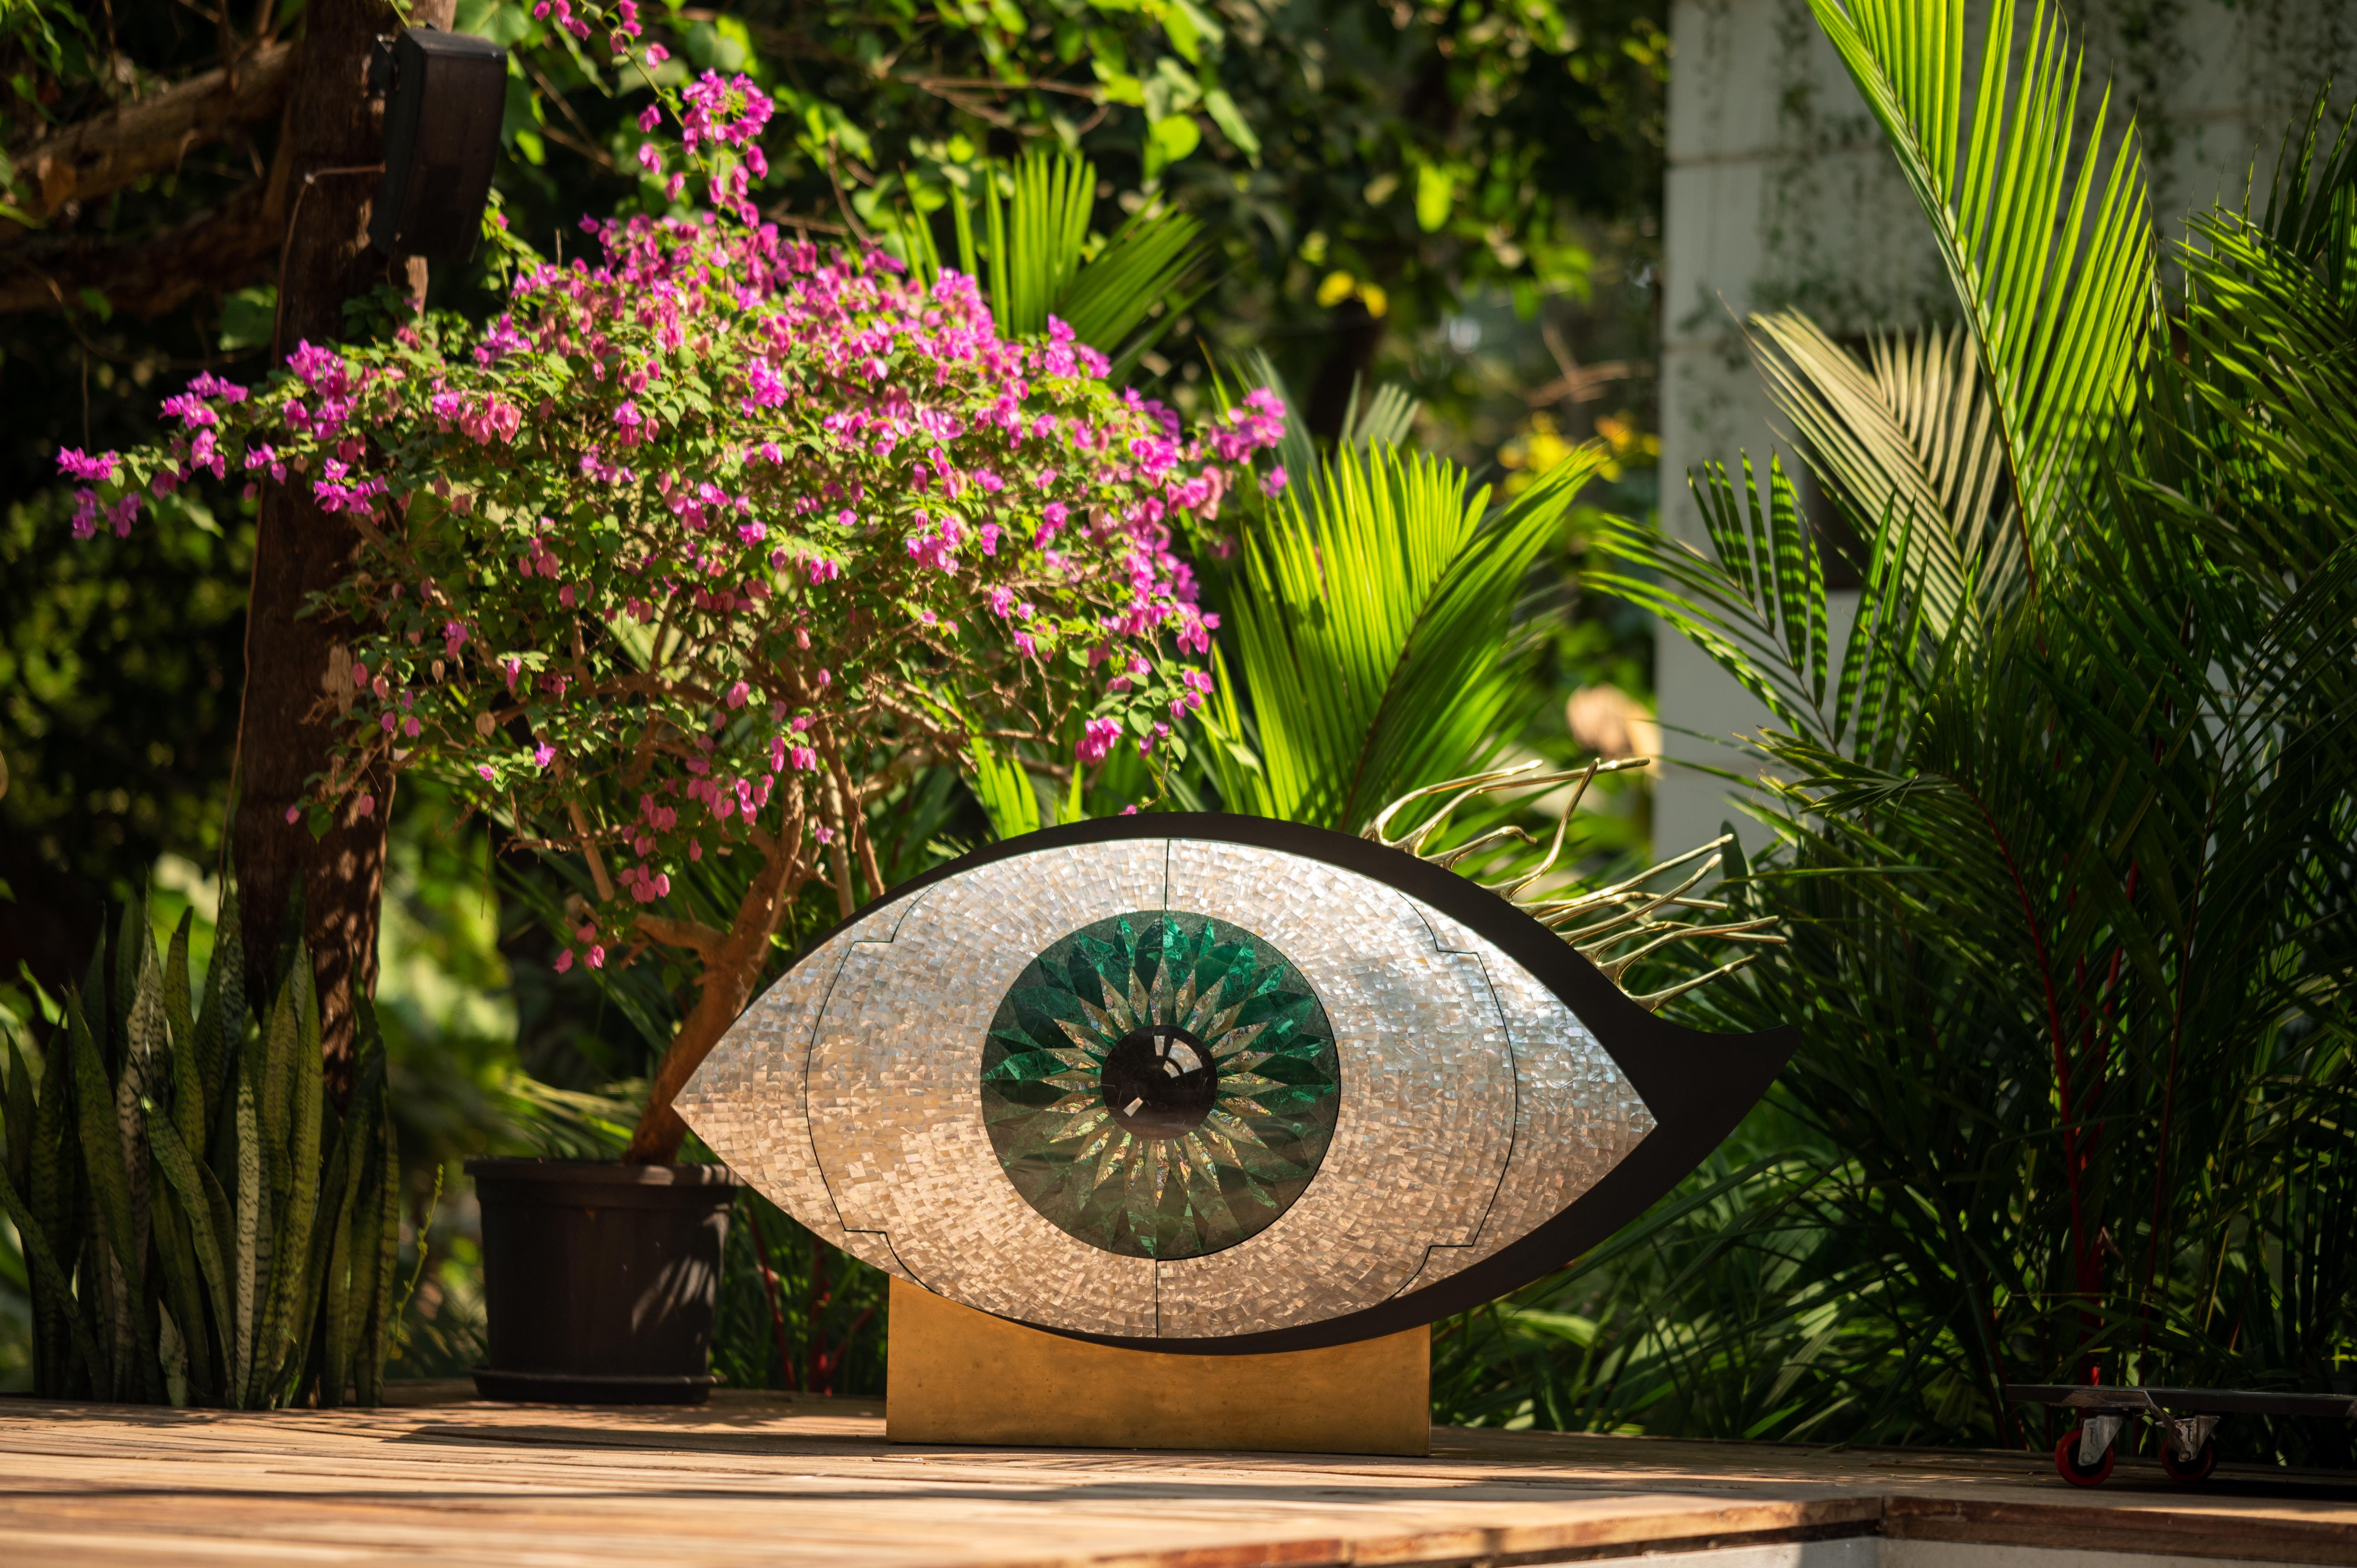 Le meuble Nazar Emerald est réalisé en nacre, pierres précieuses, laiton et métal avec un jeu de textures, de matières et de couleurs mates et brillantes, l'élevant à un niveau sculptural.

Toujours à la recherche d'une nouvelle approche